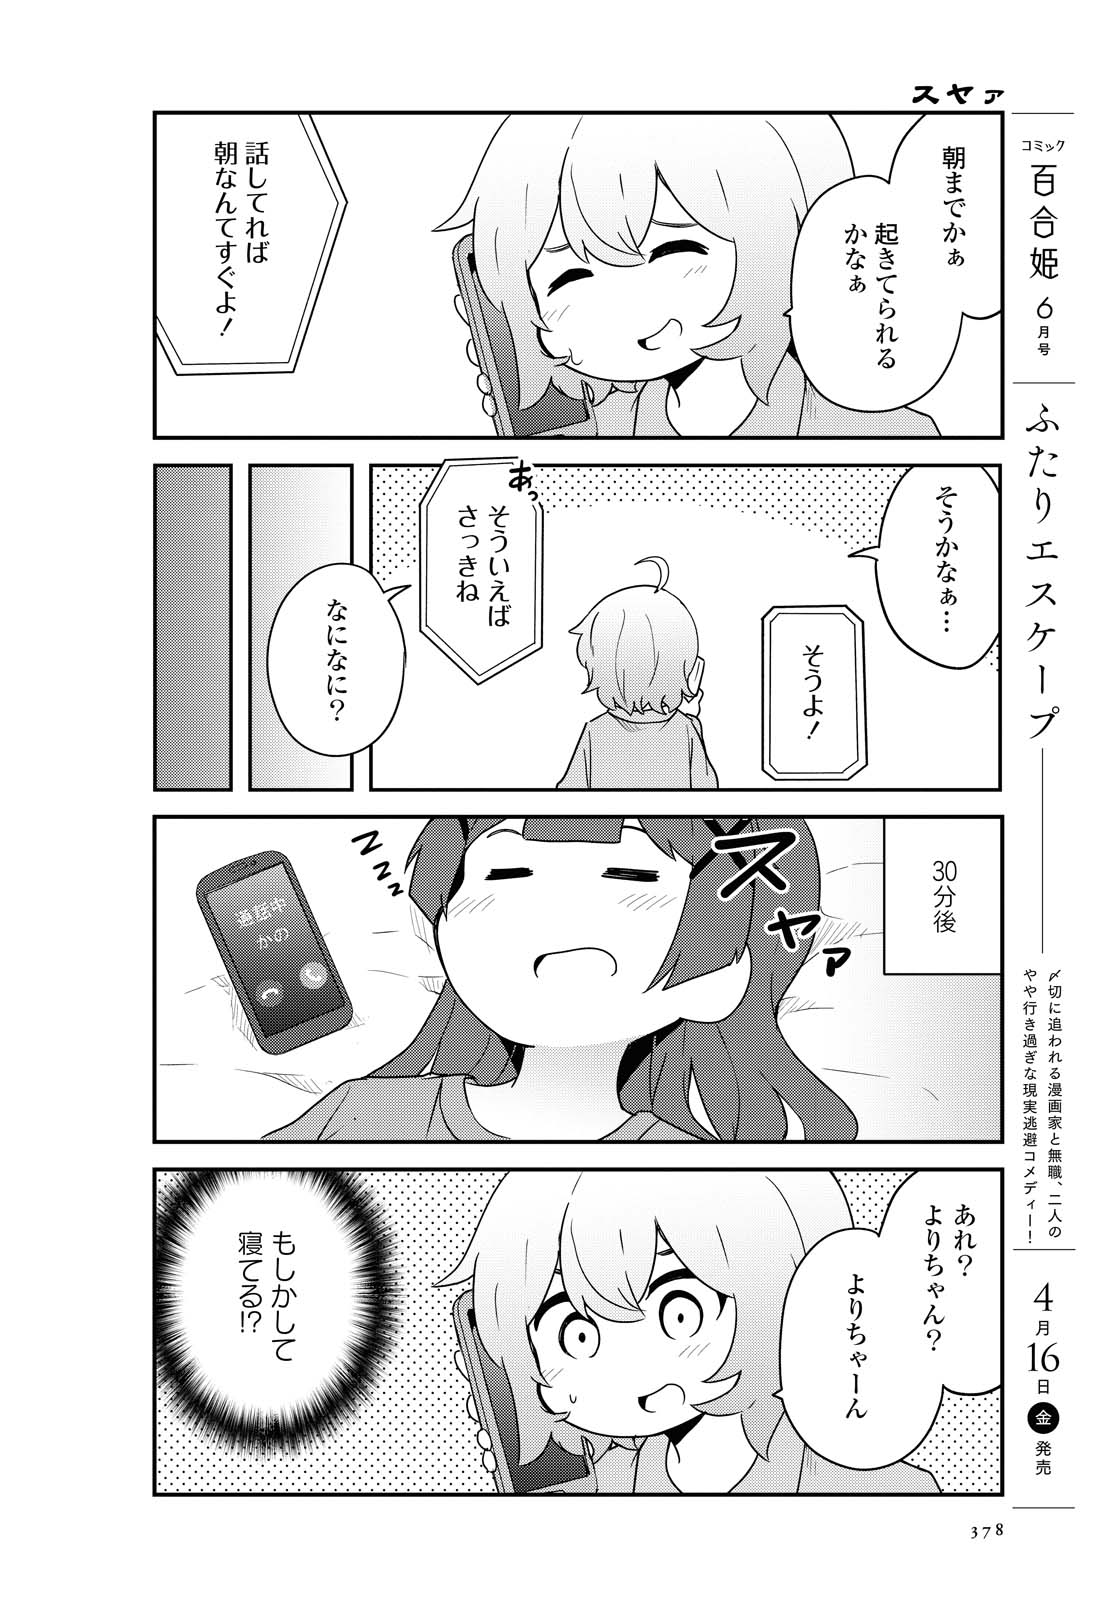 Watashi ni Tenshi ga Maiorita! - Chapter 80 - Page 4